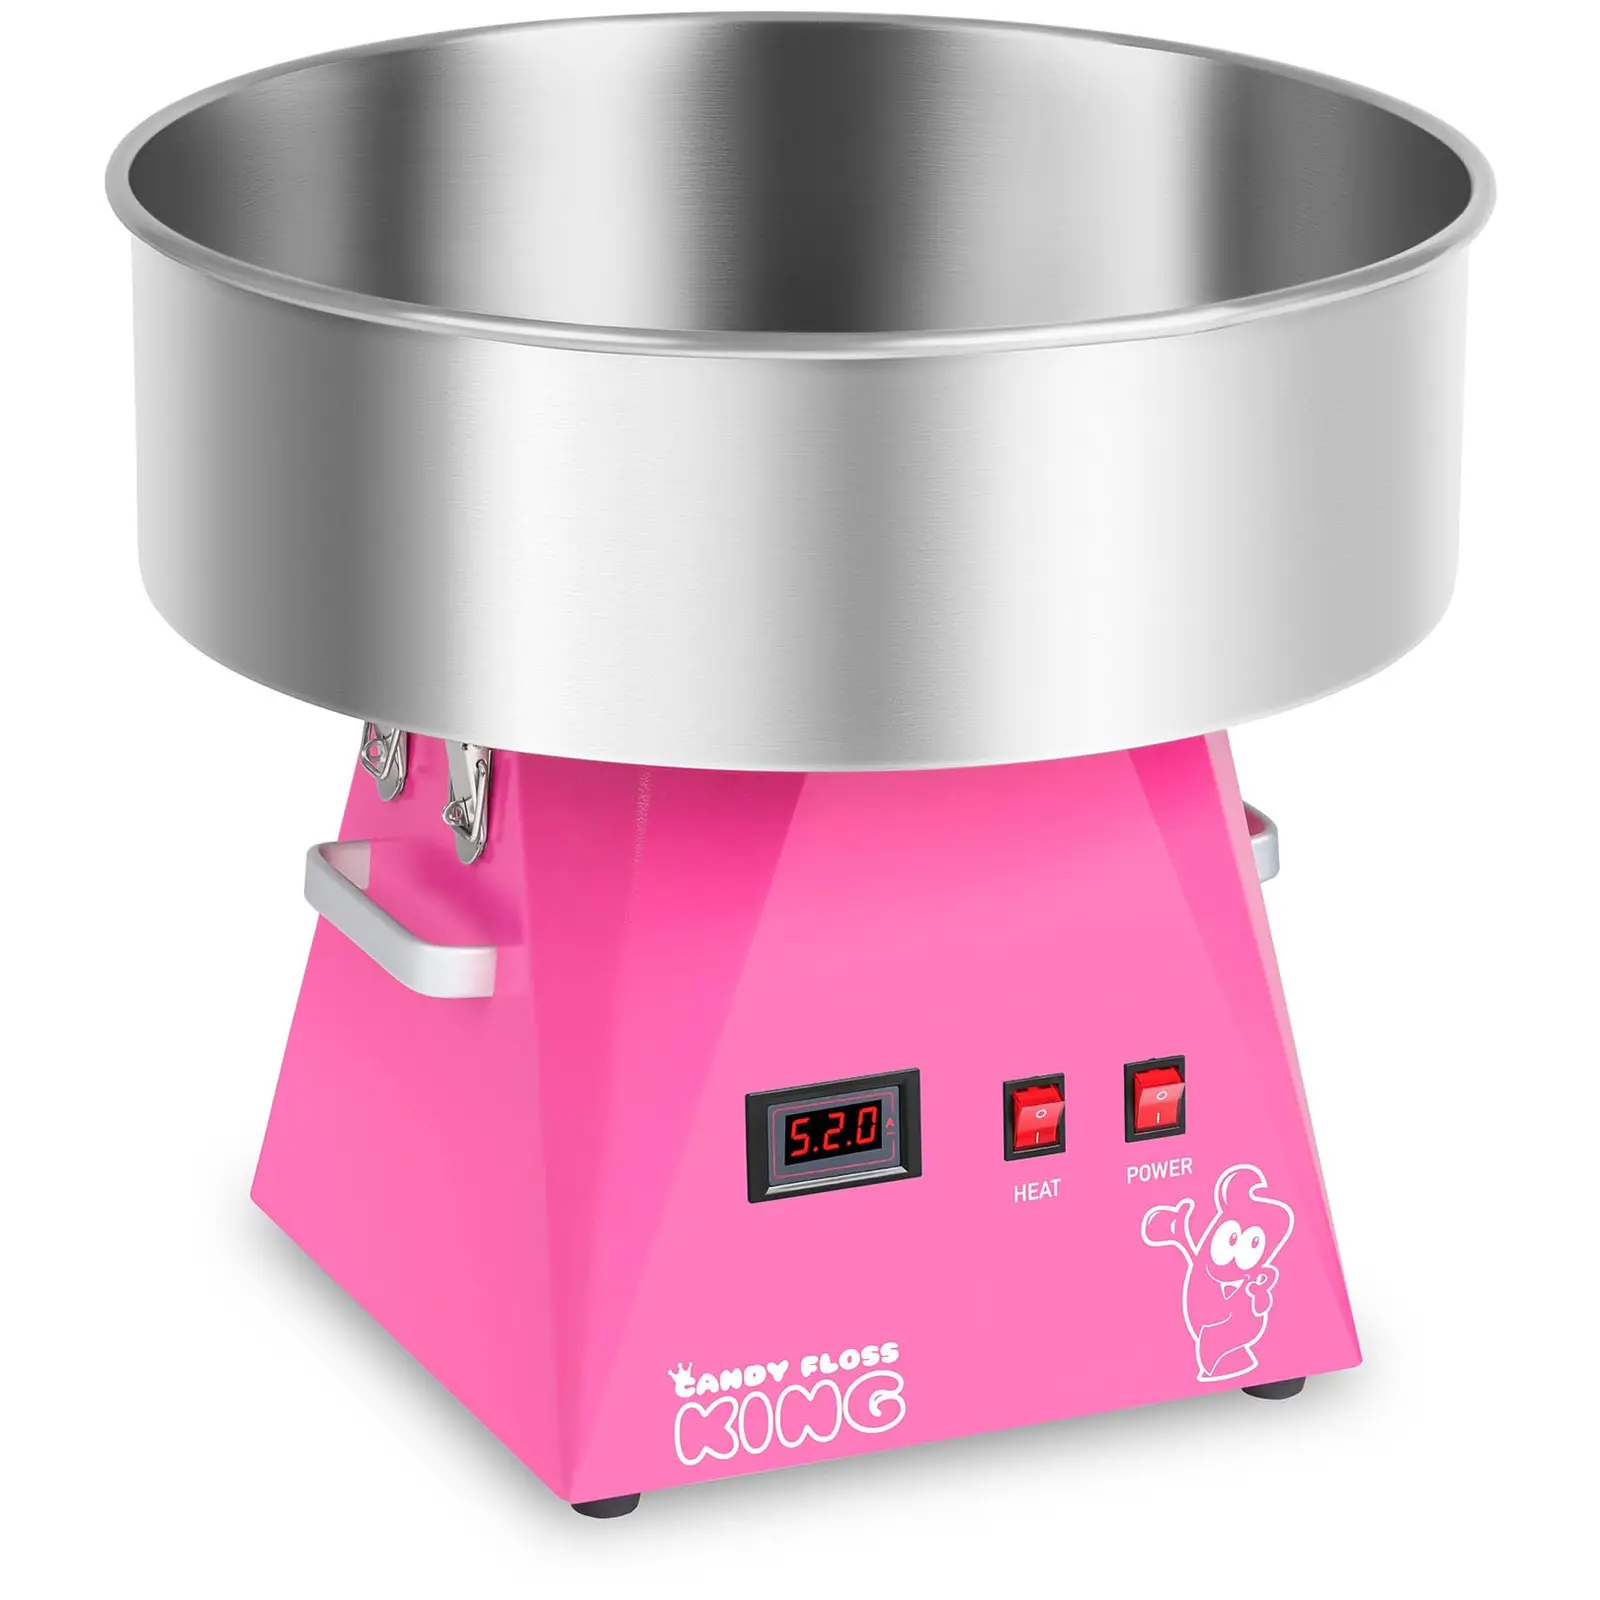 Stroj na cukrovou vatu-52 cm-růžový